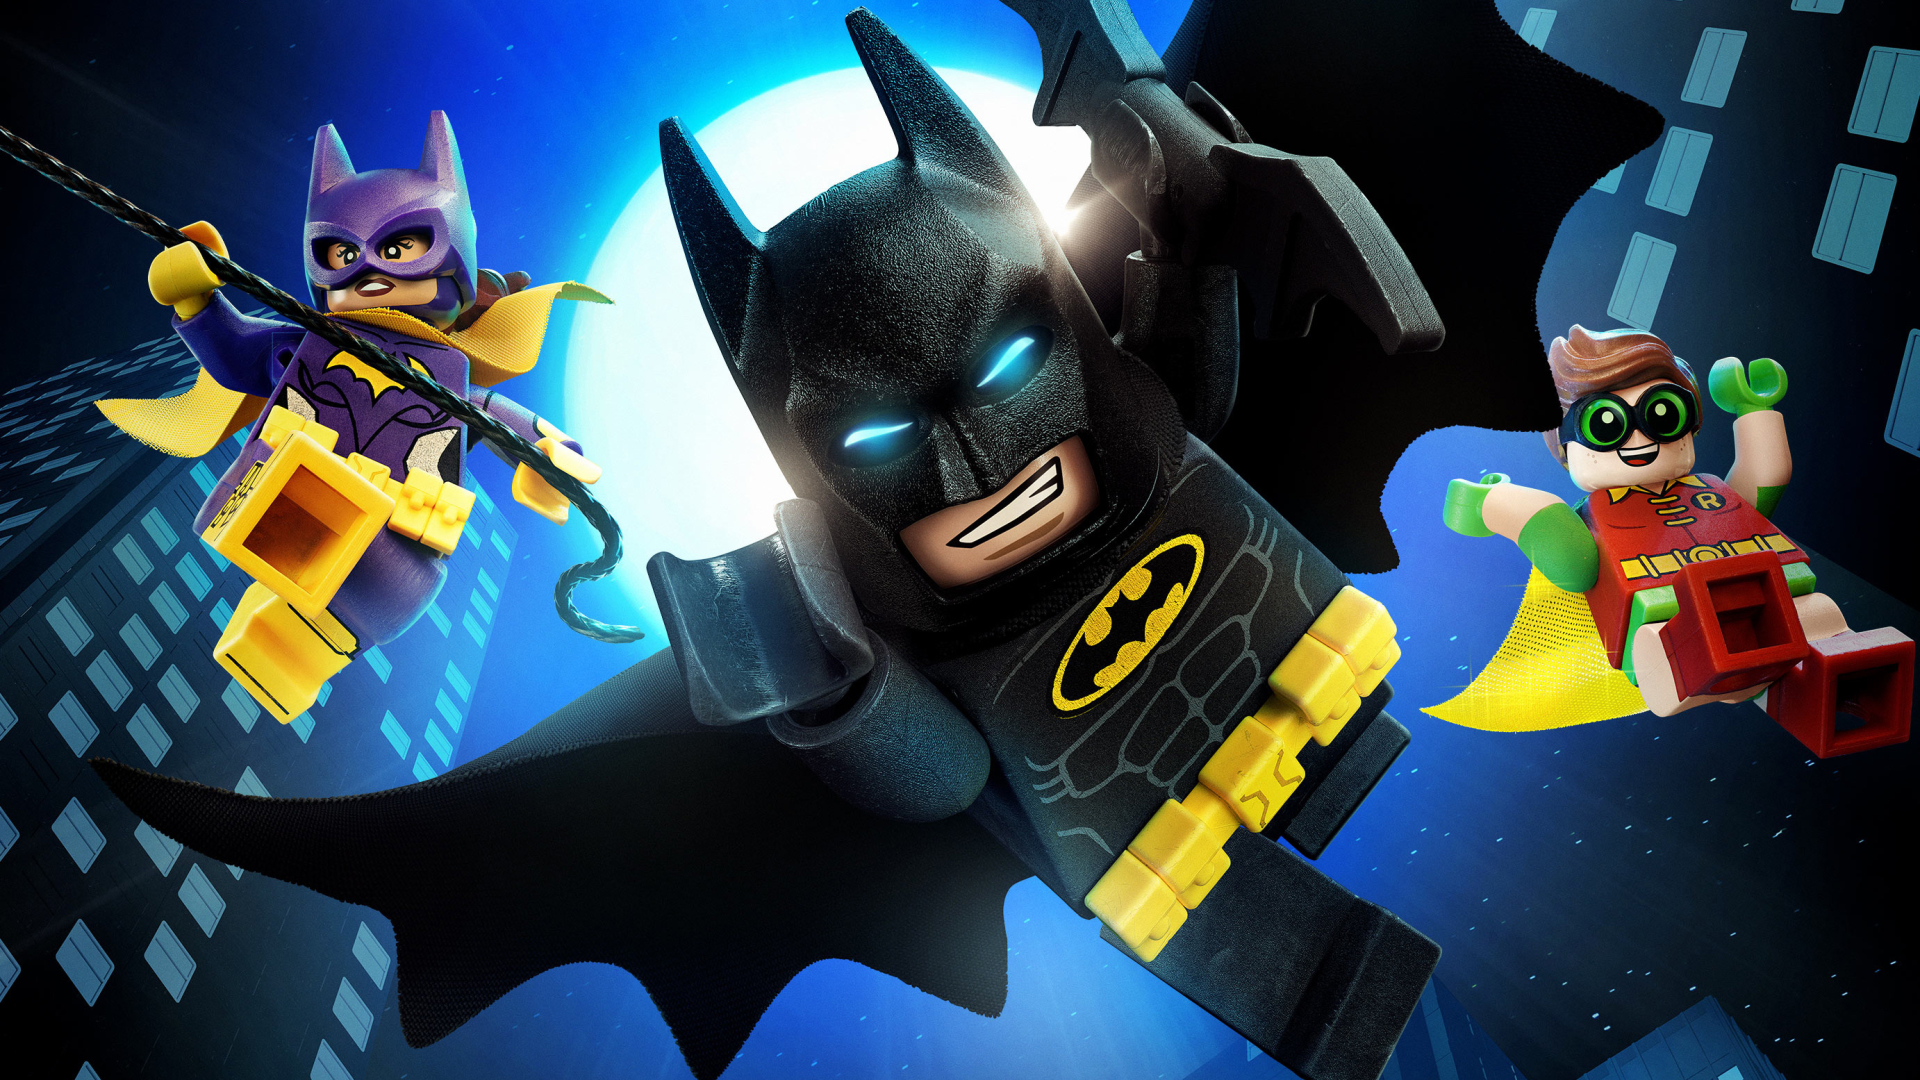 Fondos de pantalla de Batman La Lego Pelicula, Wallpapers Gratis